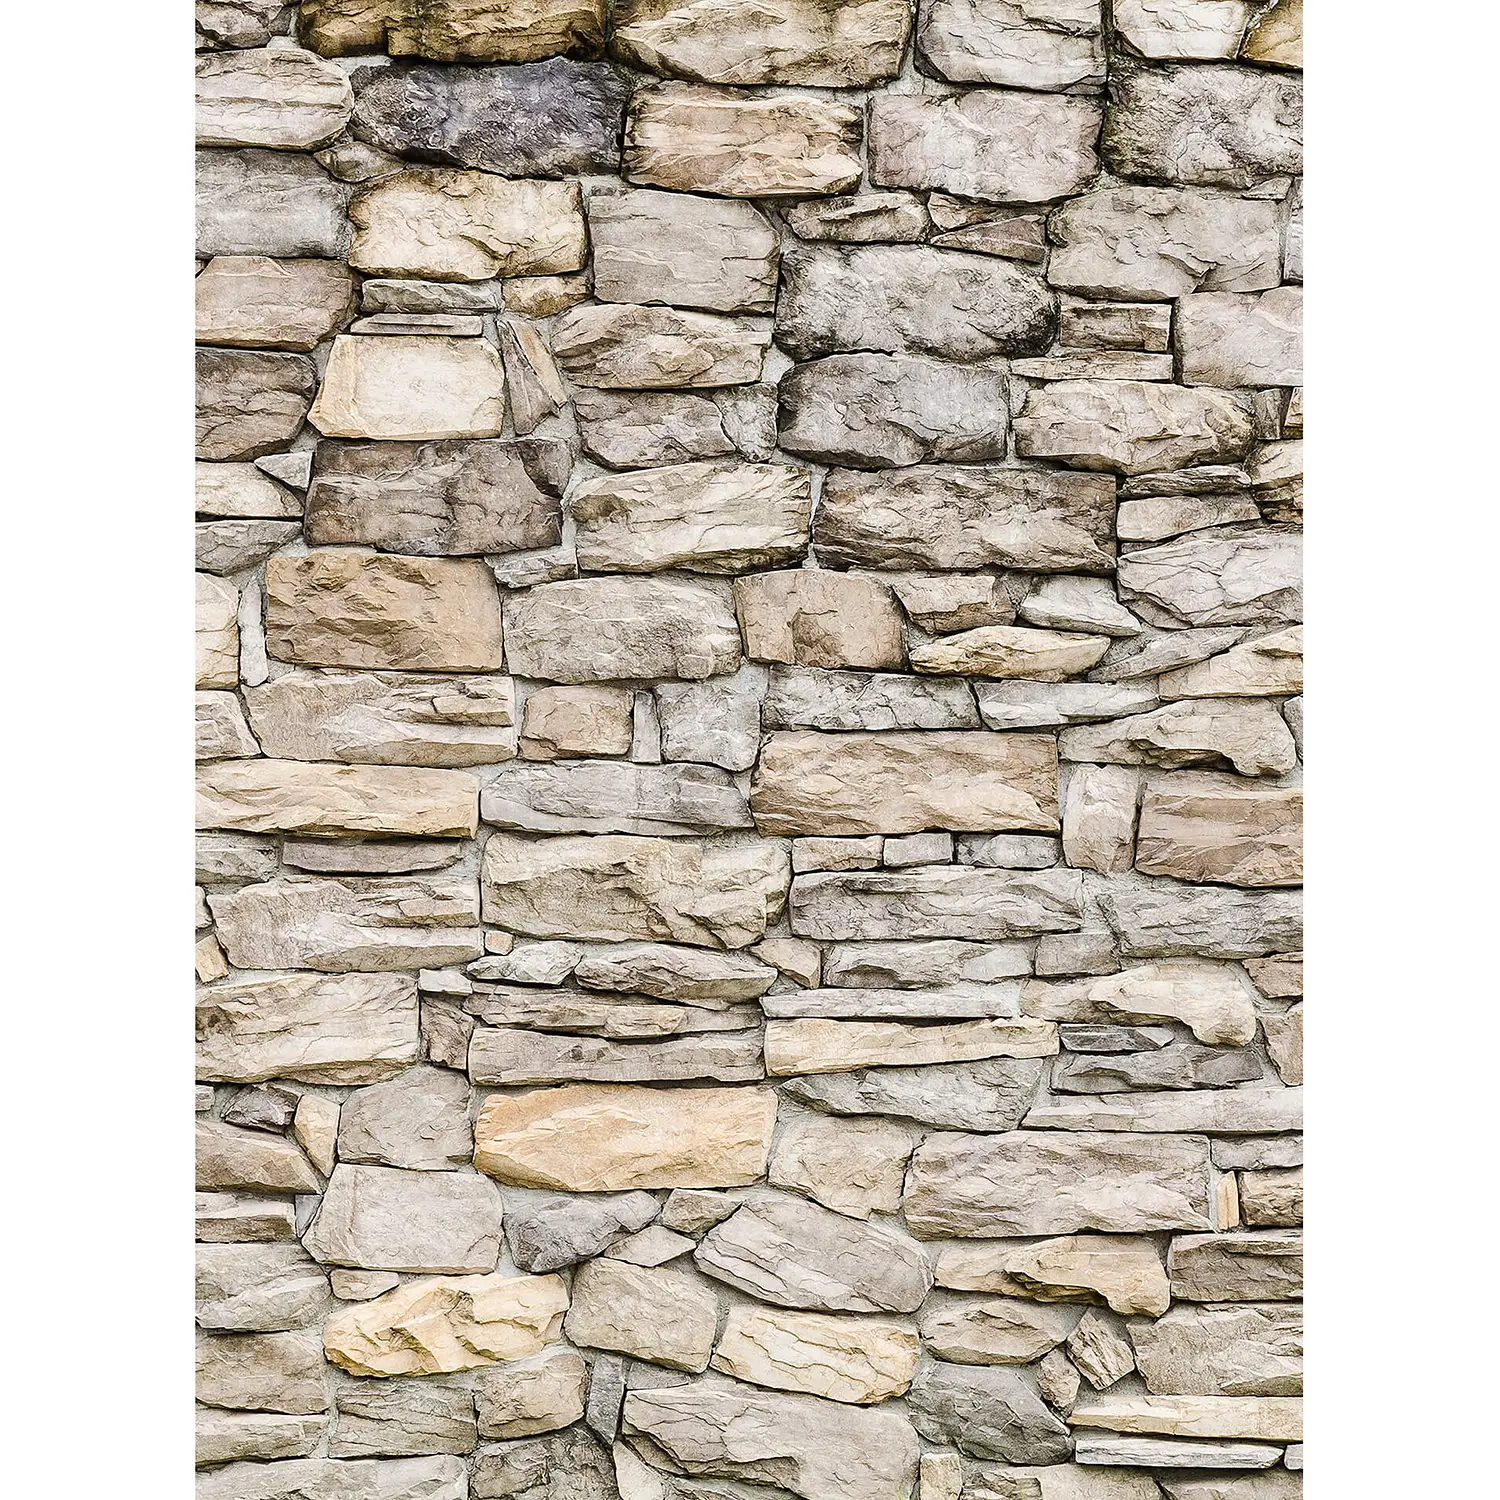 Fototapete Stone Wall | Tapeten